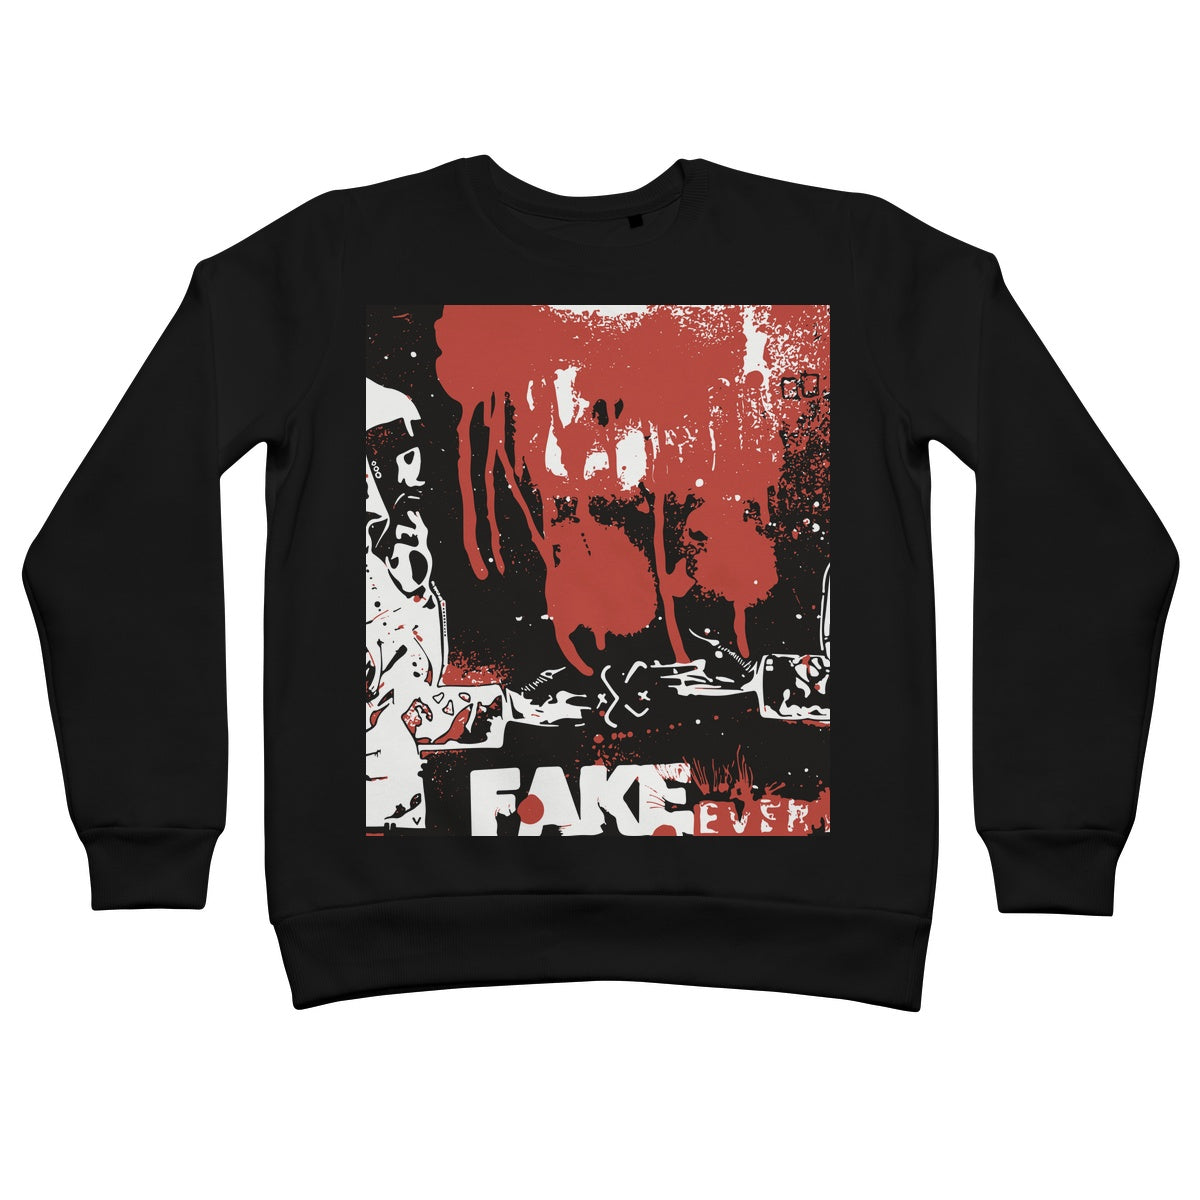 Fake everything. Ok, deal. Retail Sweatshirt